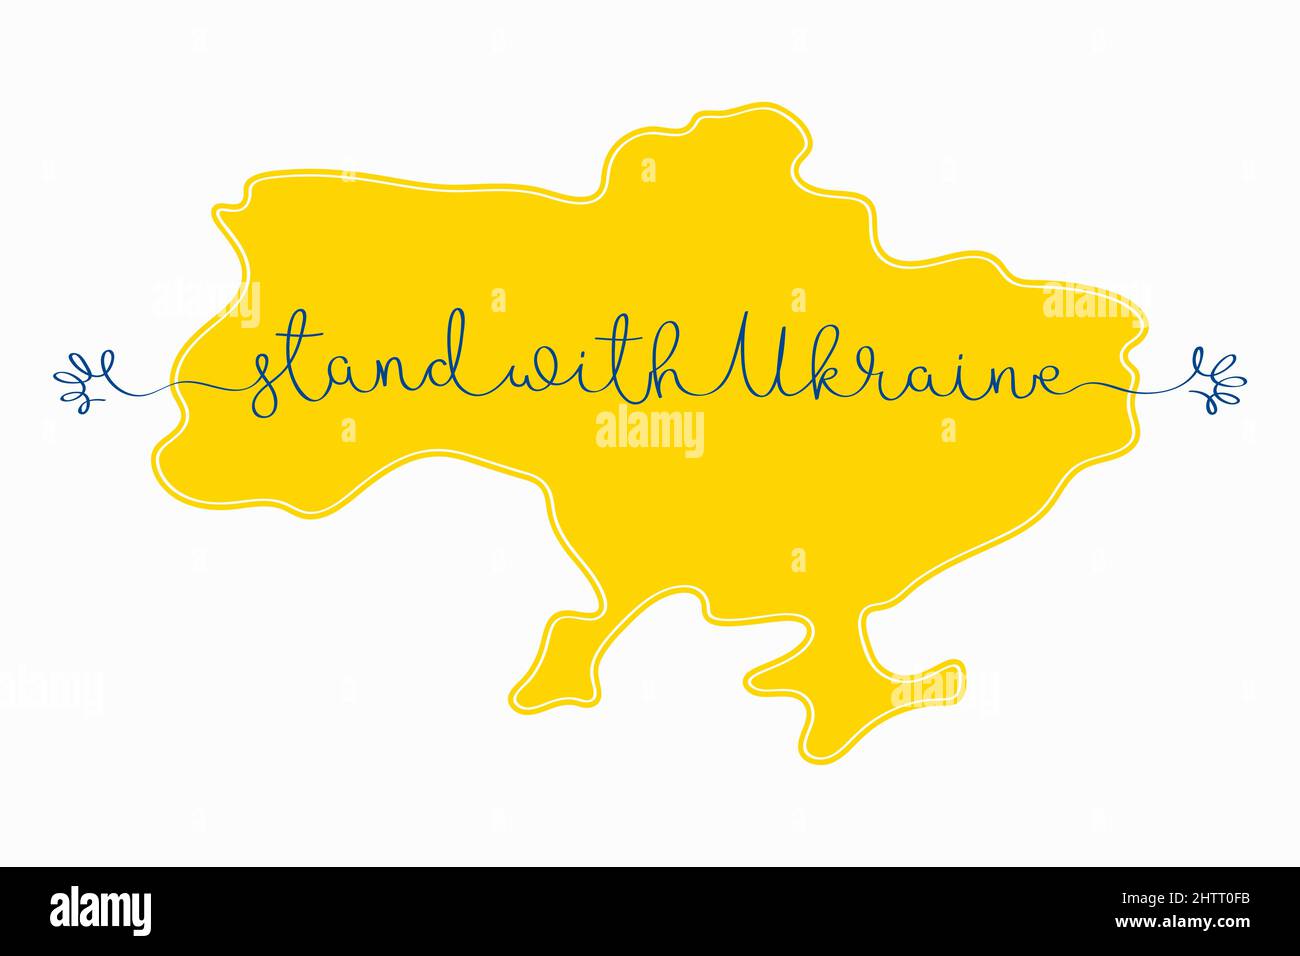 Stehe mit der Ukraine. Vektordarstellung der ukrainischen Karte und fortlaufende einzeilige Beschriftung mit abstrakten Händen isoliert auf weißem Hintergrund Stock Vektor